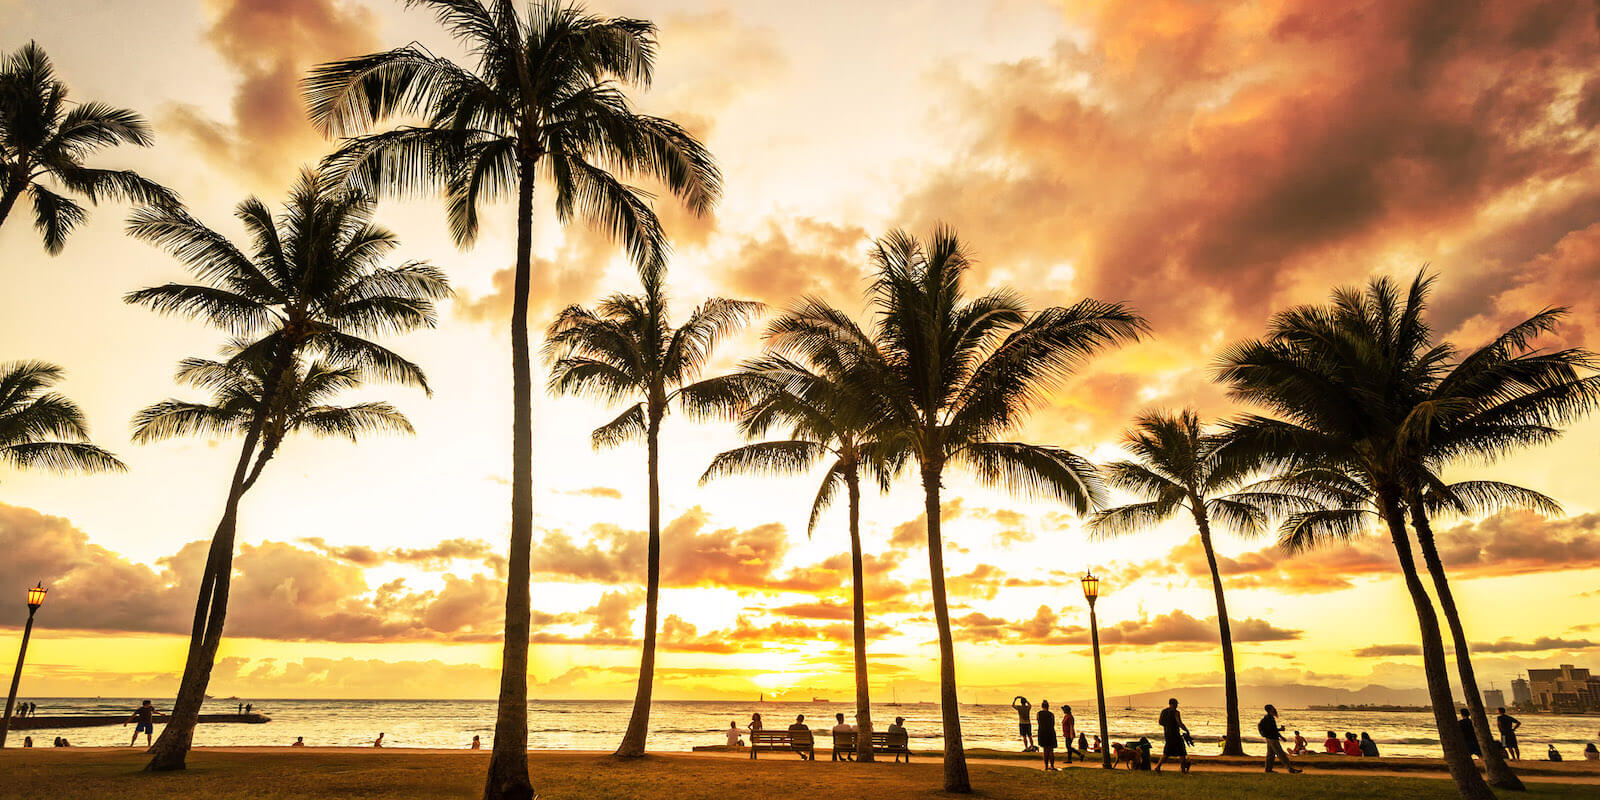 Sunset at Waikiki Beach, Oahu